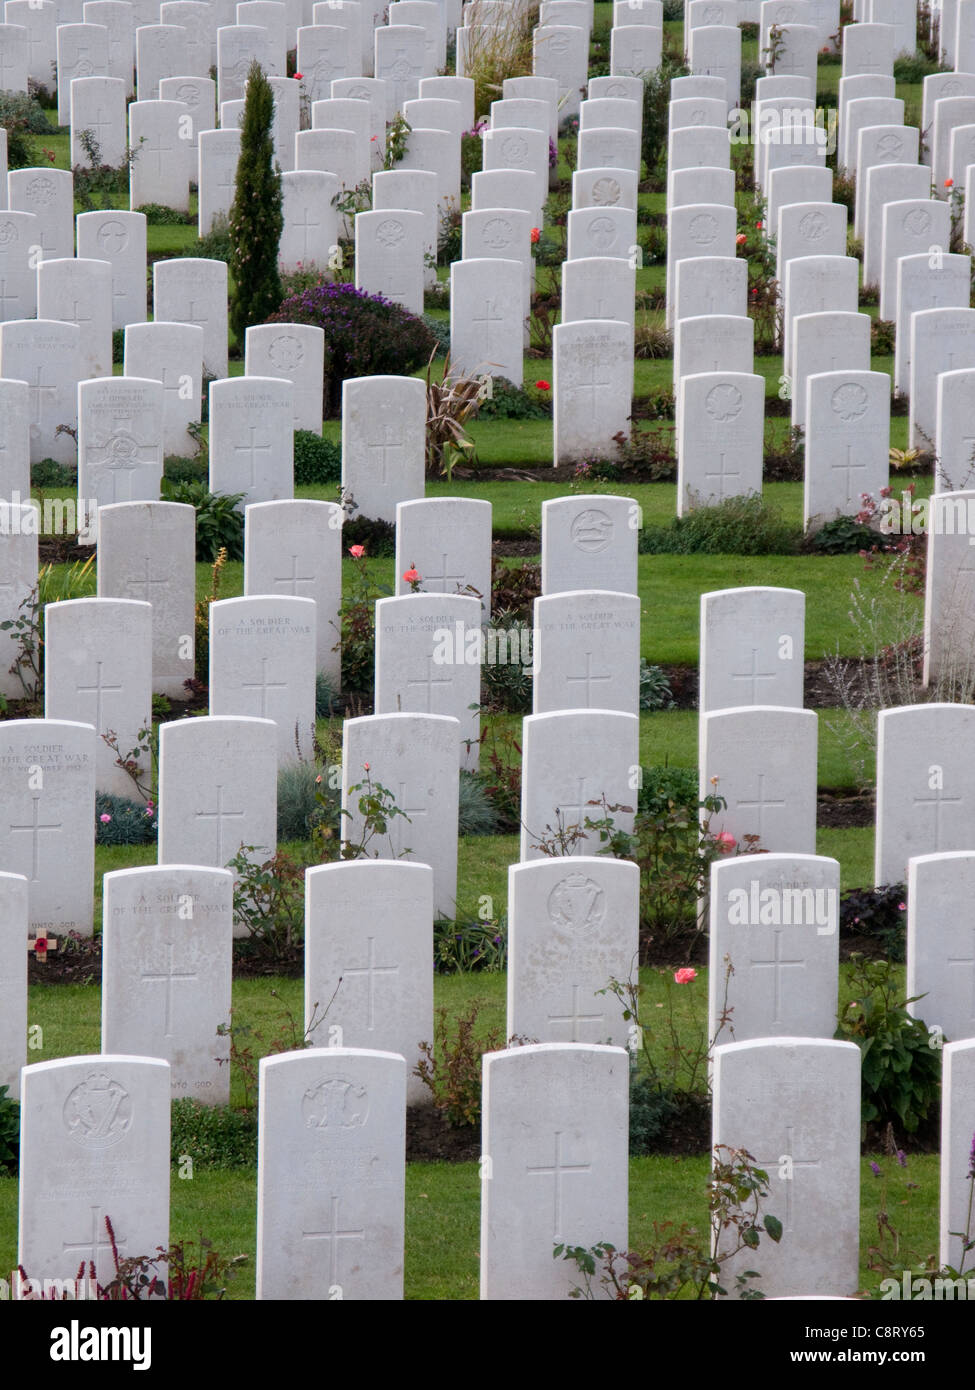 Tynecot cimetière pour la première guerre mondiale soldats tués dans les environs d'Ypres, Belgique, UNION EUROPÉENNE Banque D'Images